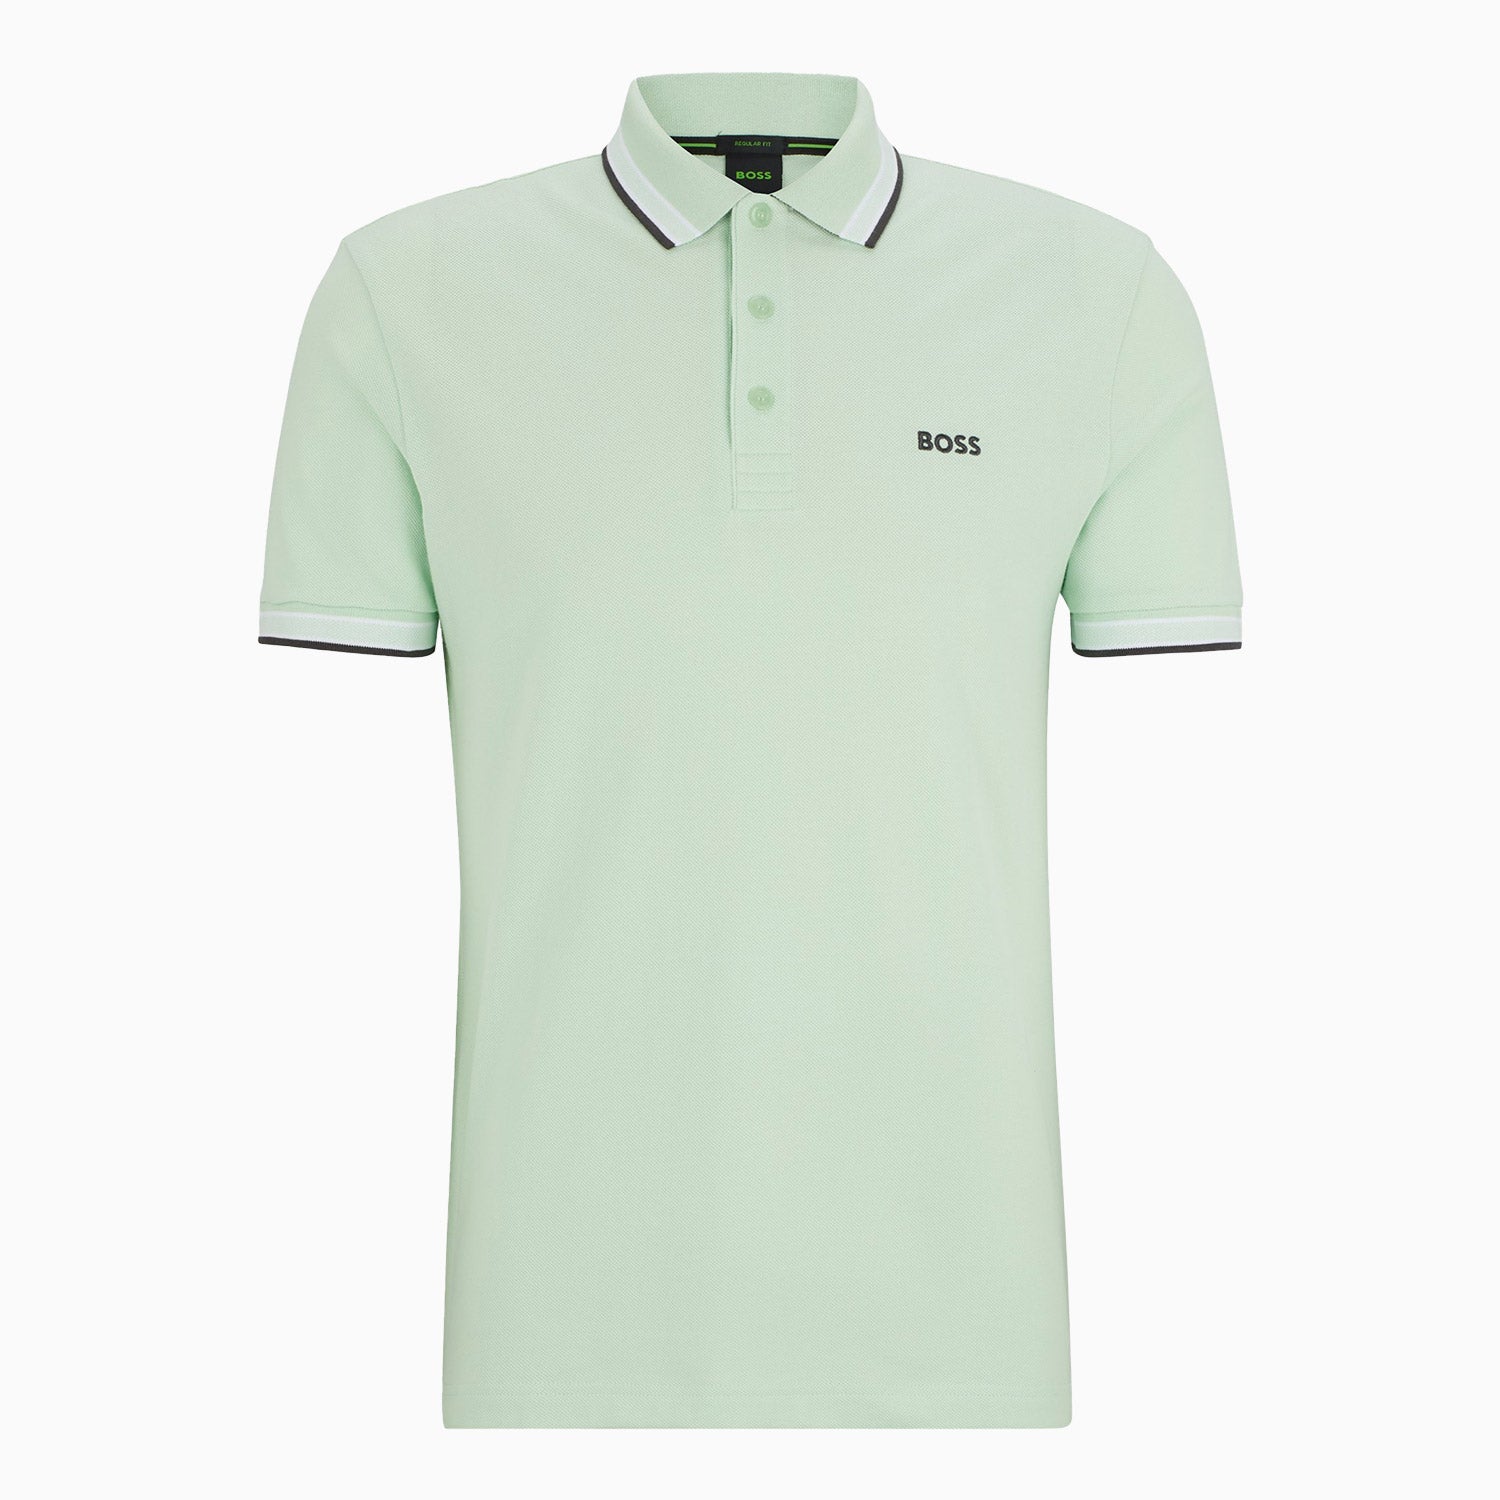 hugo-boss-mens-cotton-pique-polo-shirt-with-contrast-logo-50469055-388